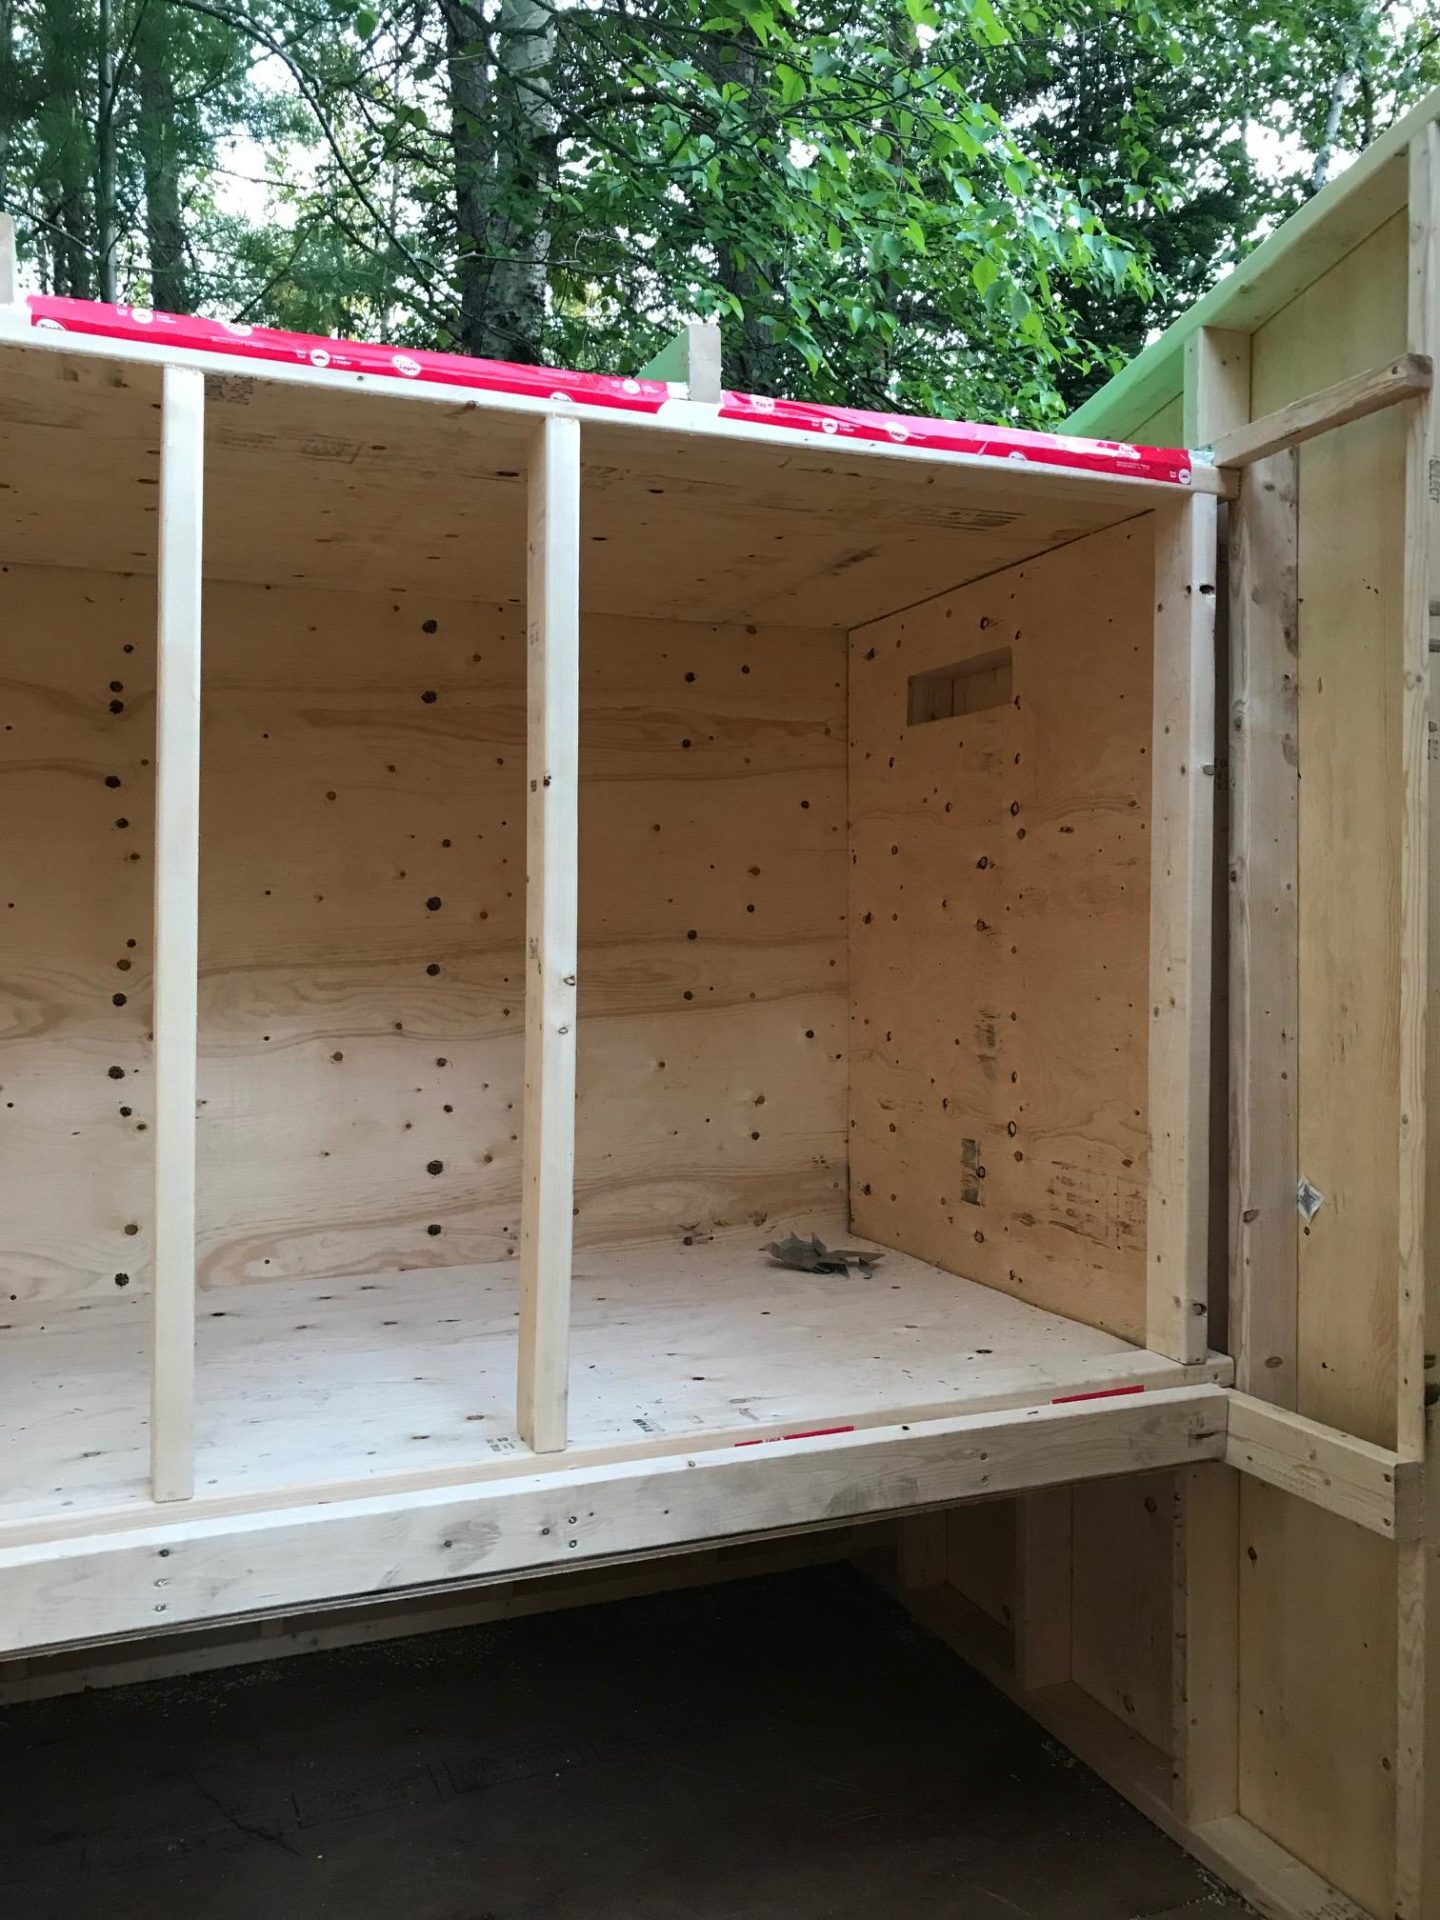 DIY Chicken Coop Built Inside a Shed